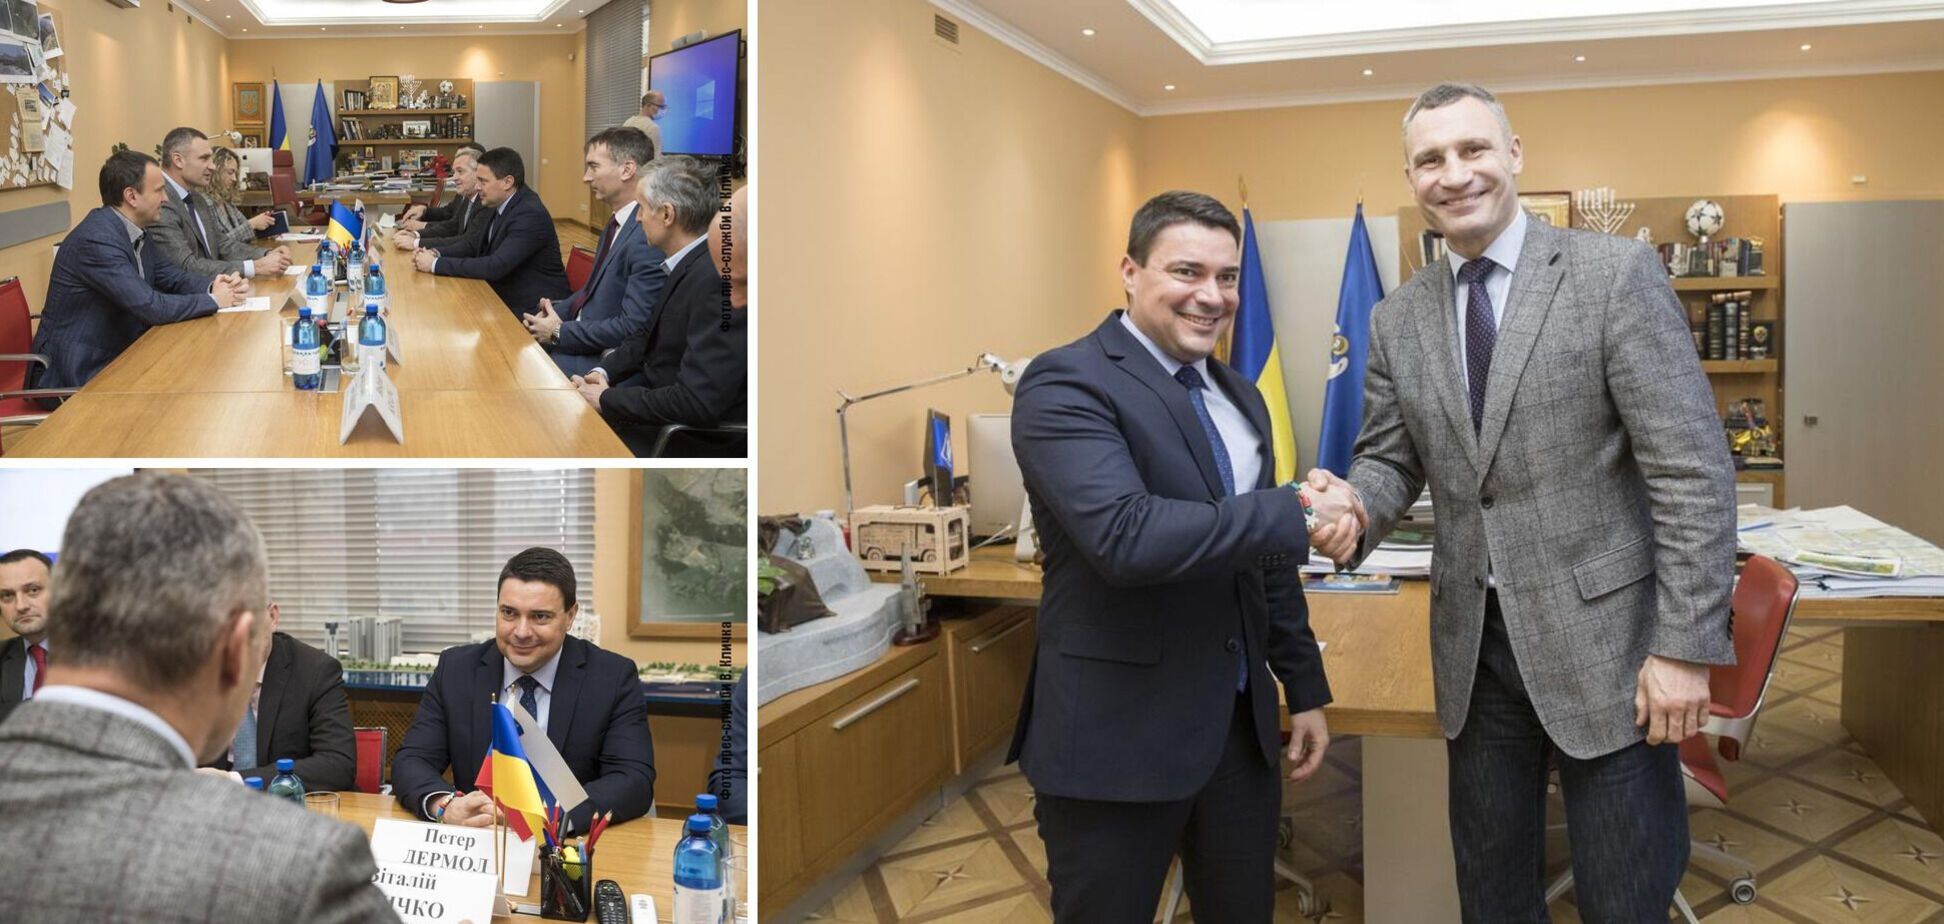 Кличко встретился с мэром словенского муниципалитета Веленье и обсудил внедрение энергосберегающих технологий в Киеве